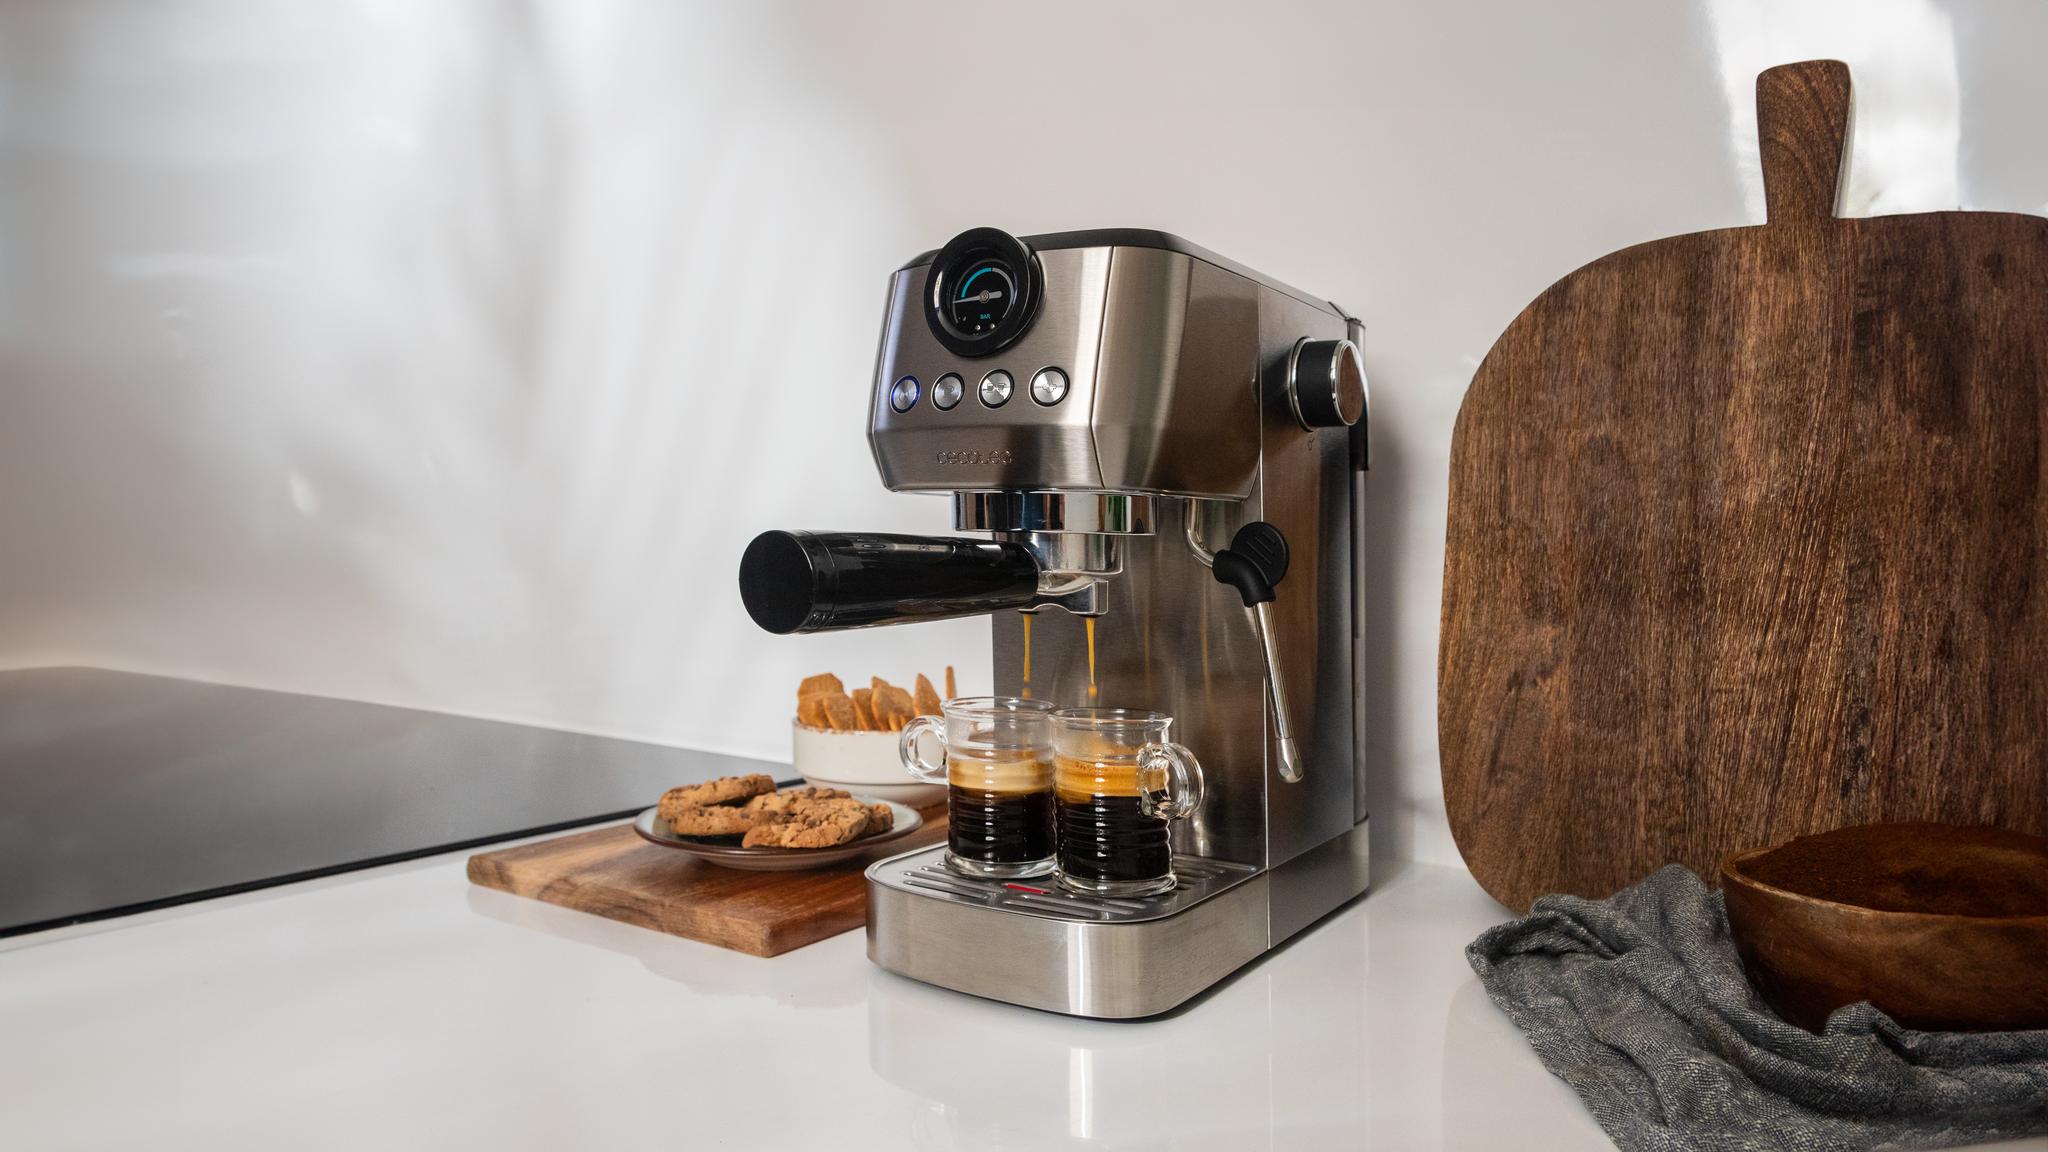 Cecotec Power Espresso 20 Steel Pro Latte Cafetera Semiautomática